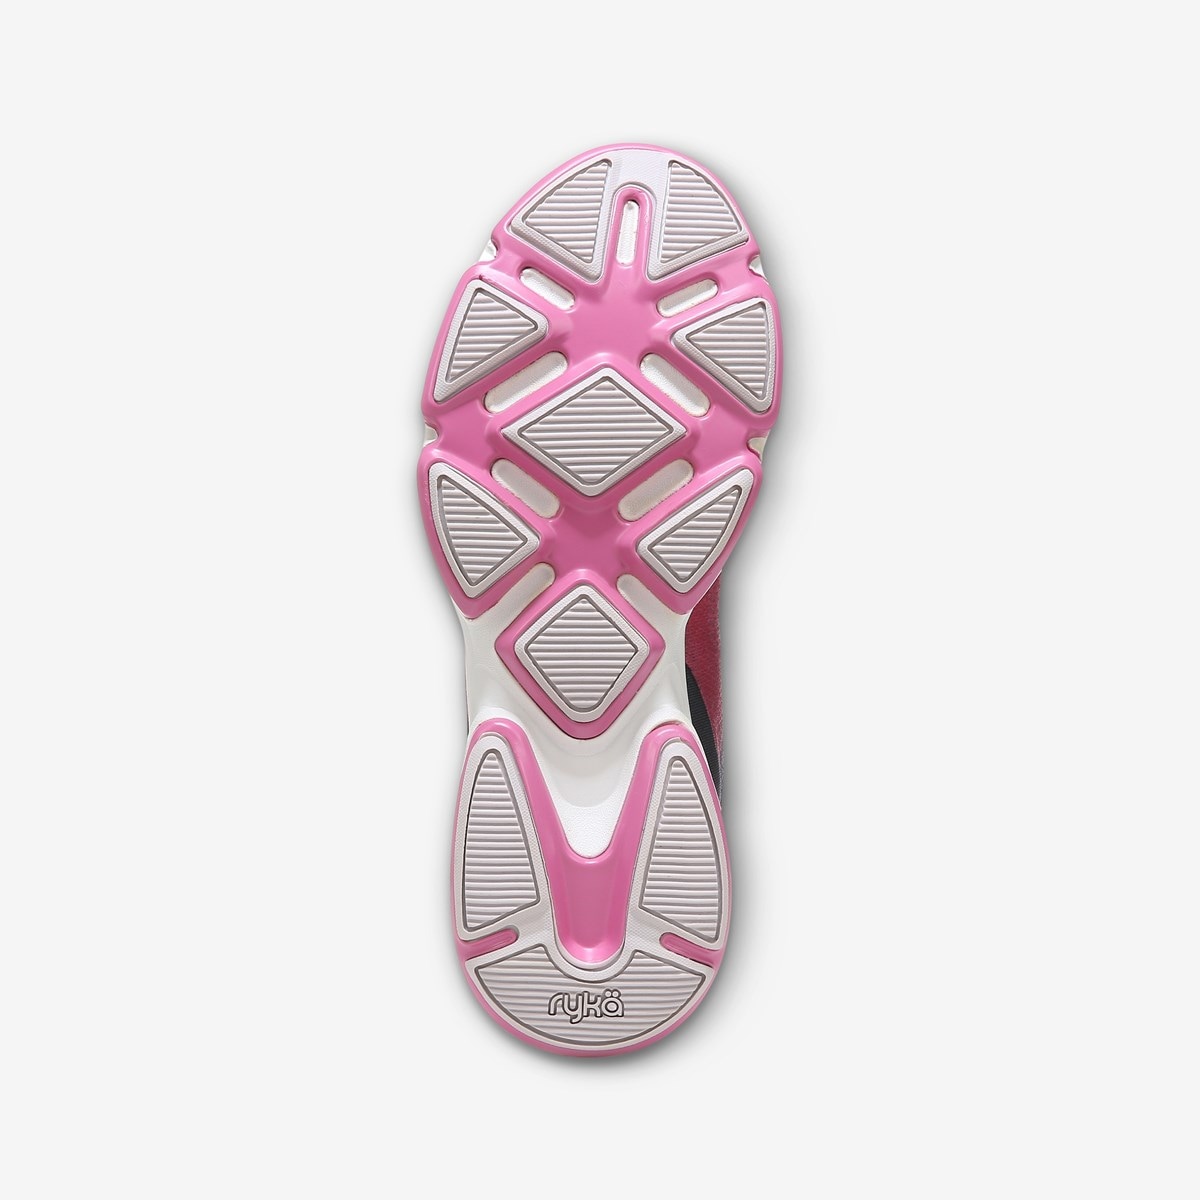 Rykä Devotion Plus 4 Walking Shoe | Womens Sneakers